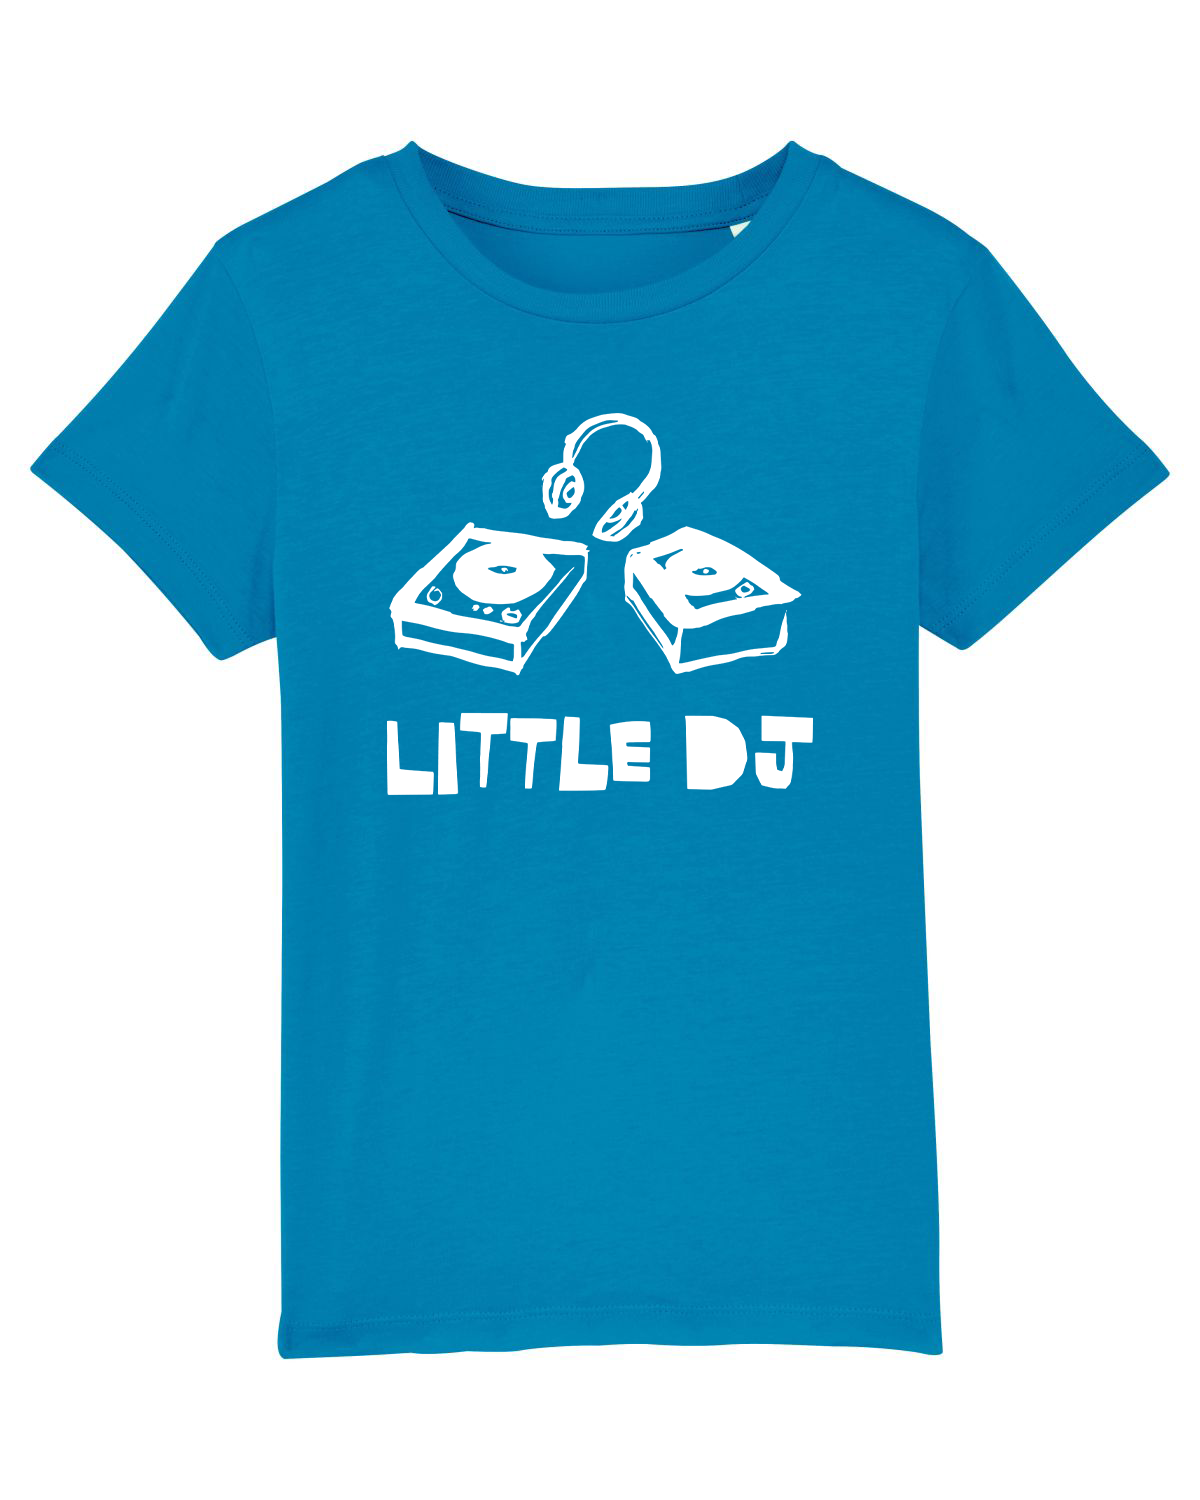 'Little DJ' Organic Kids T-shirt